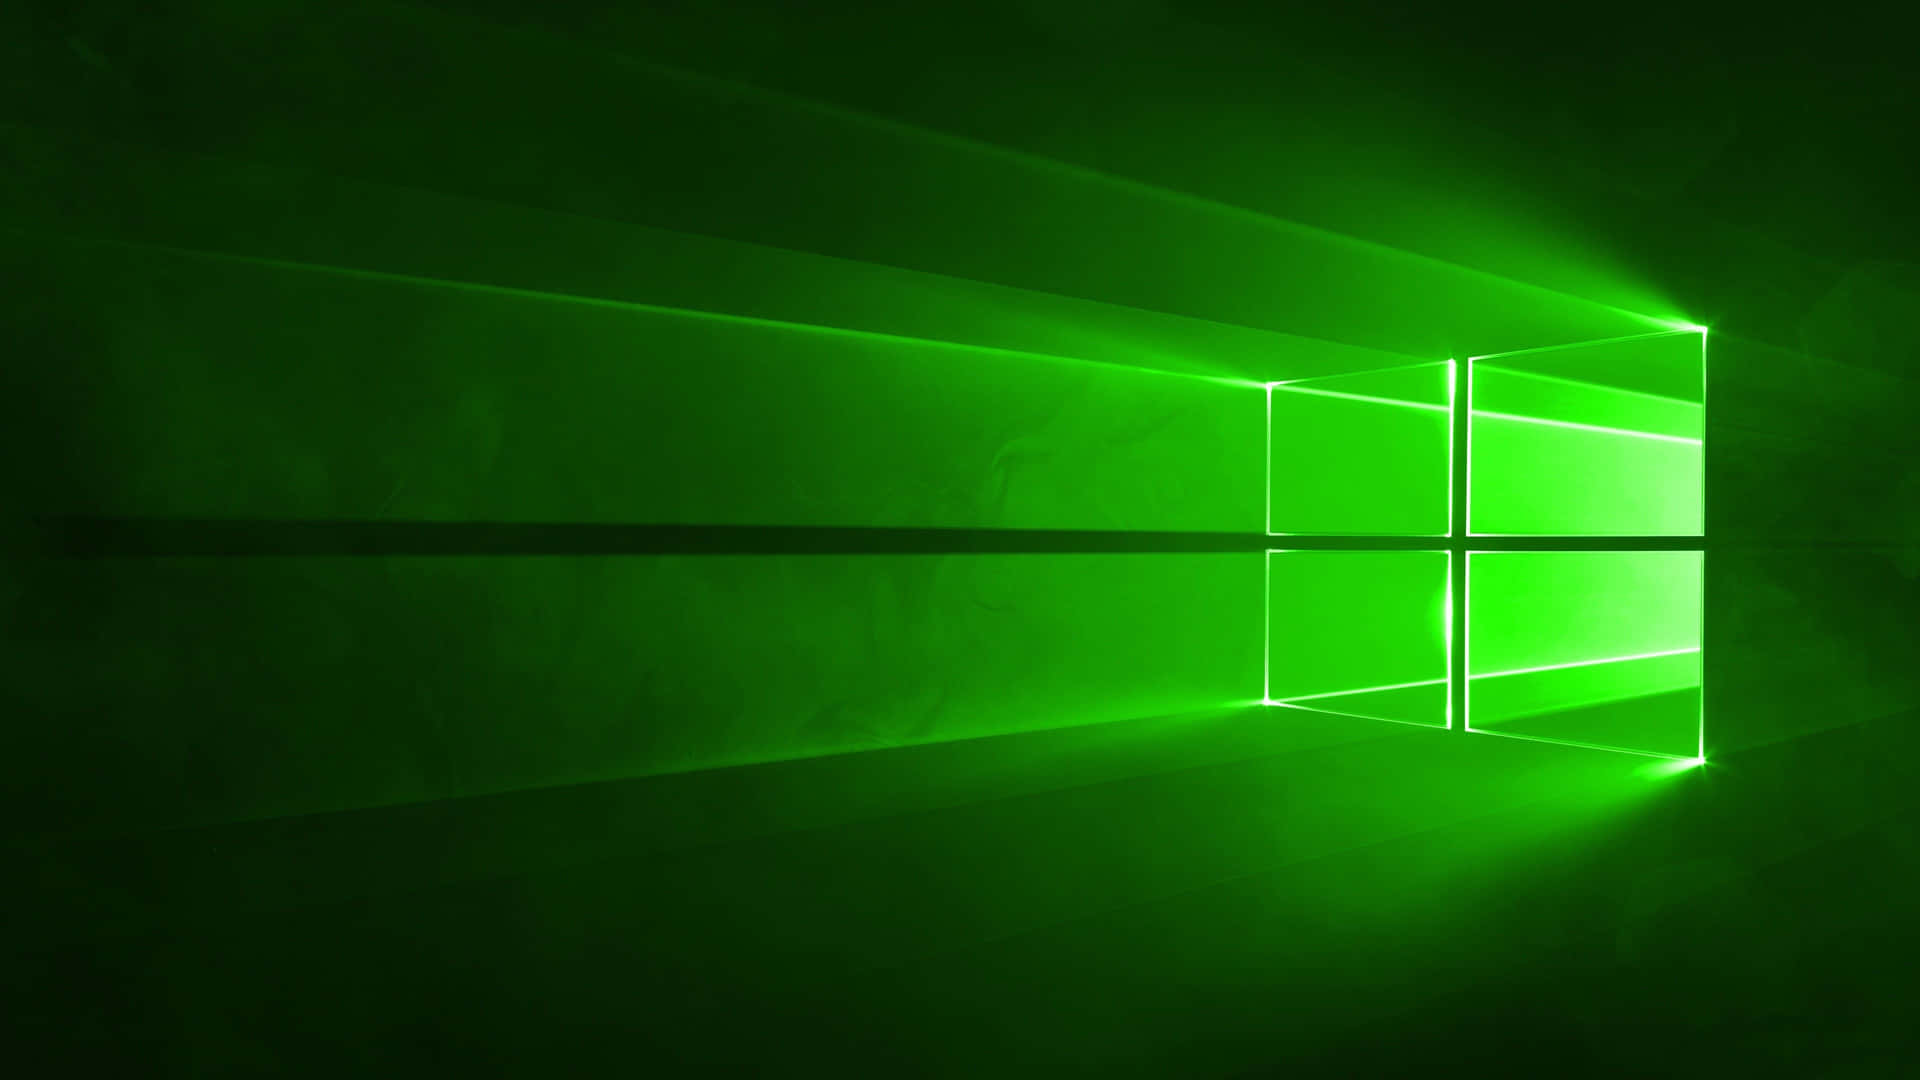 Portail Tuo Desktop Del Computer Ad Un Livello Superiore Con Questo Sfondo Verde Vibrante! Sfondo